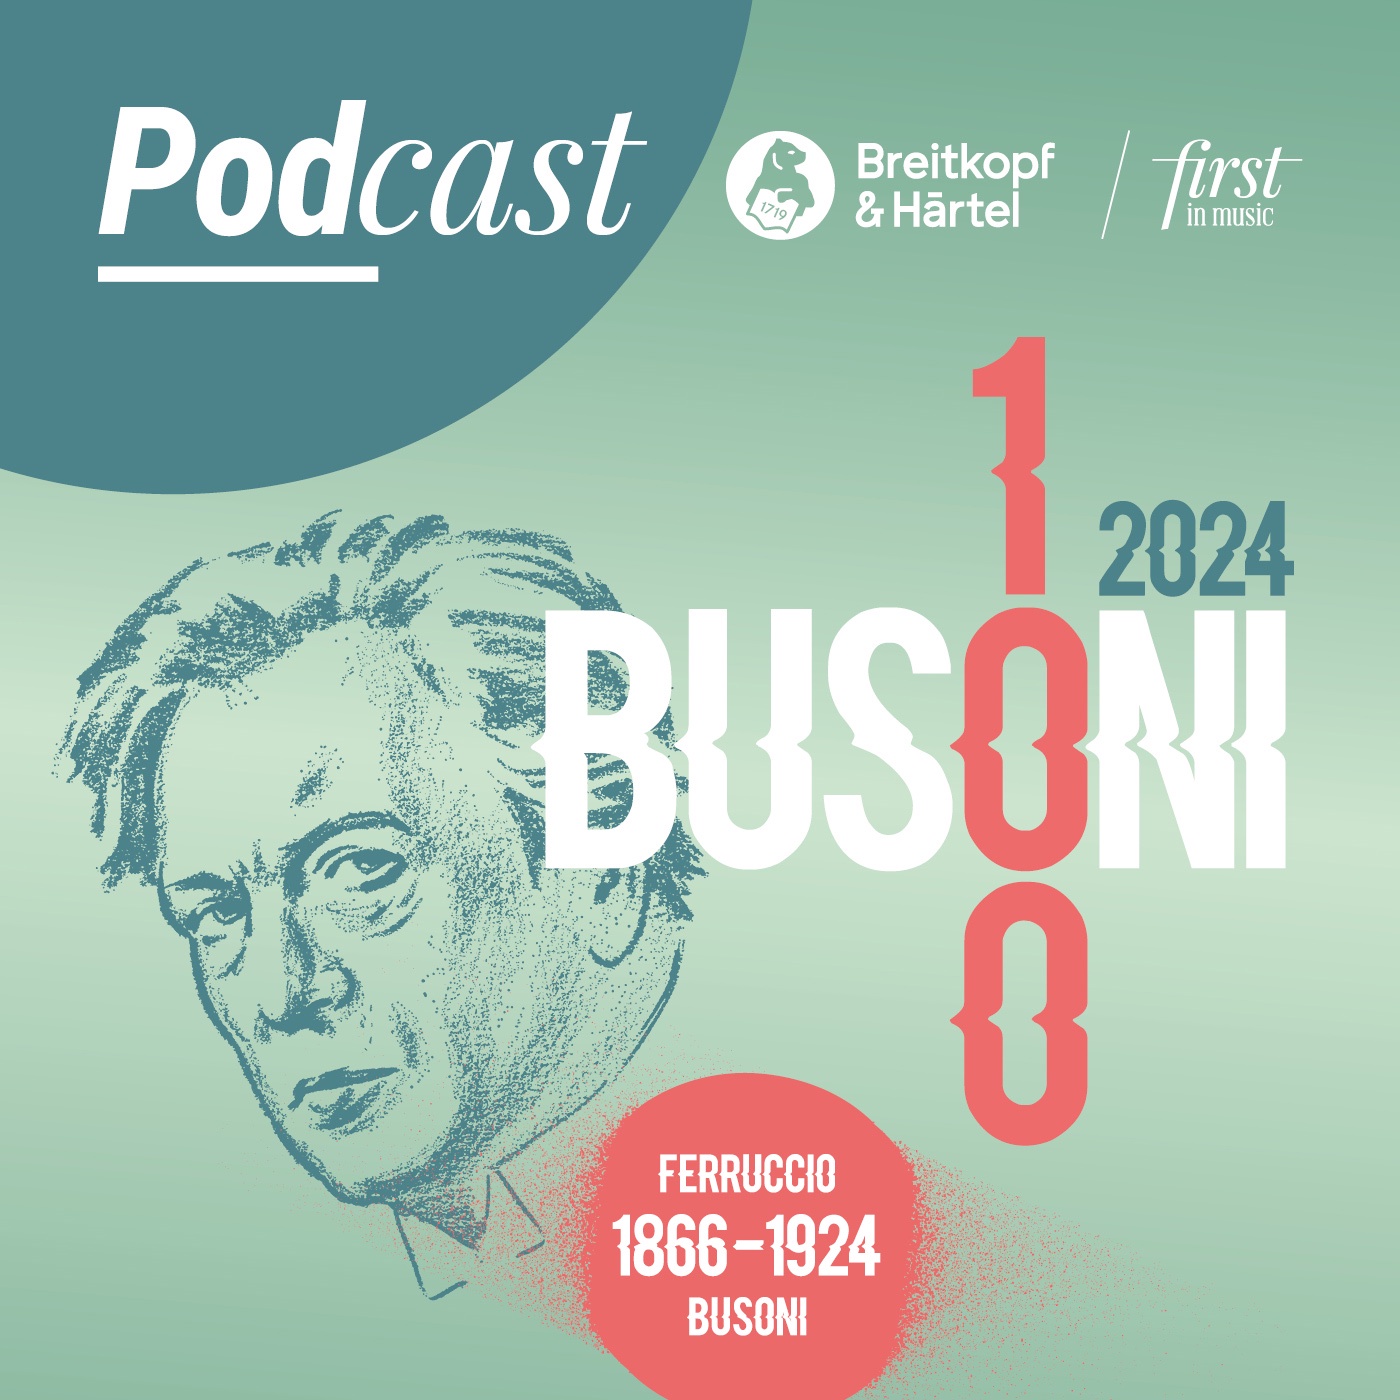 Längst an der Zeit – die „zentrale Kulturfigur“ Ferruccio Busoni